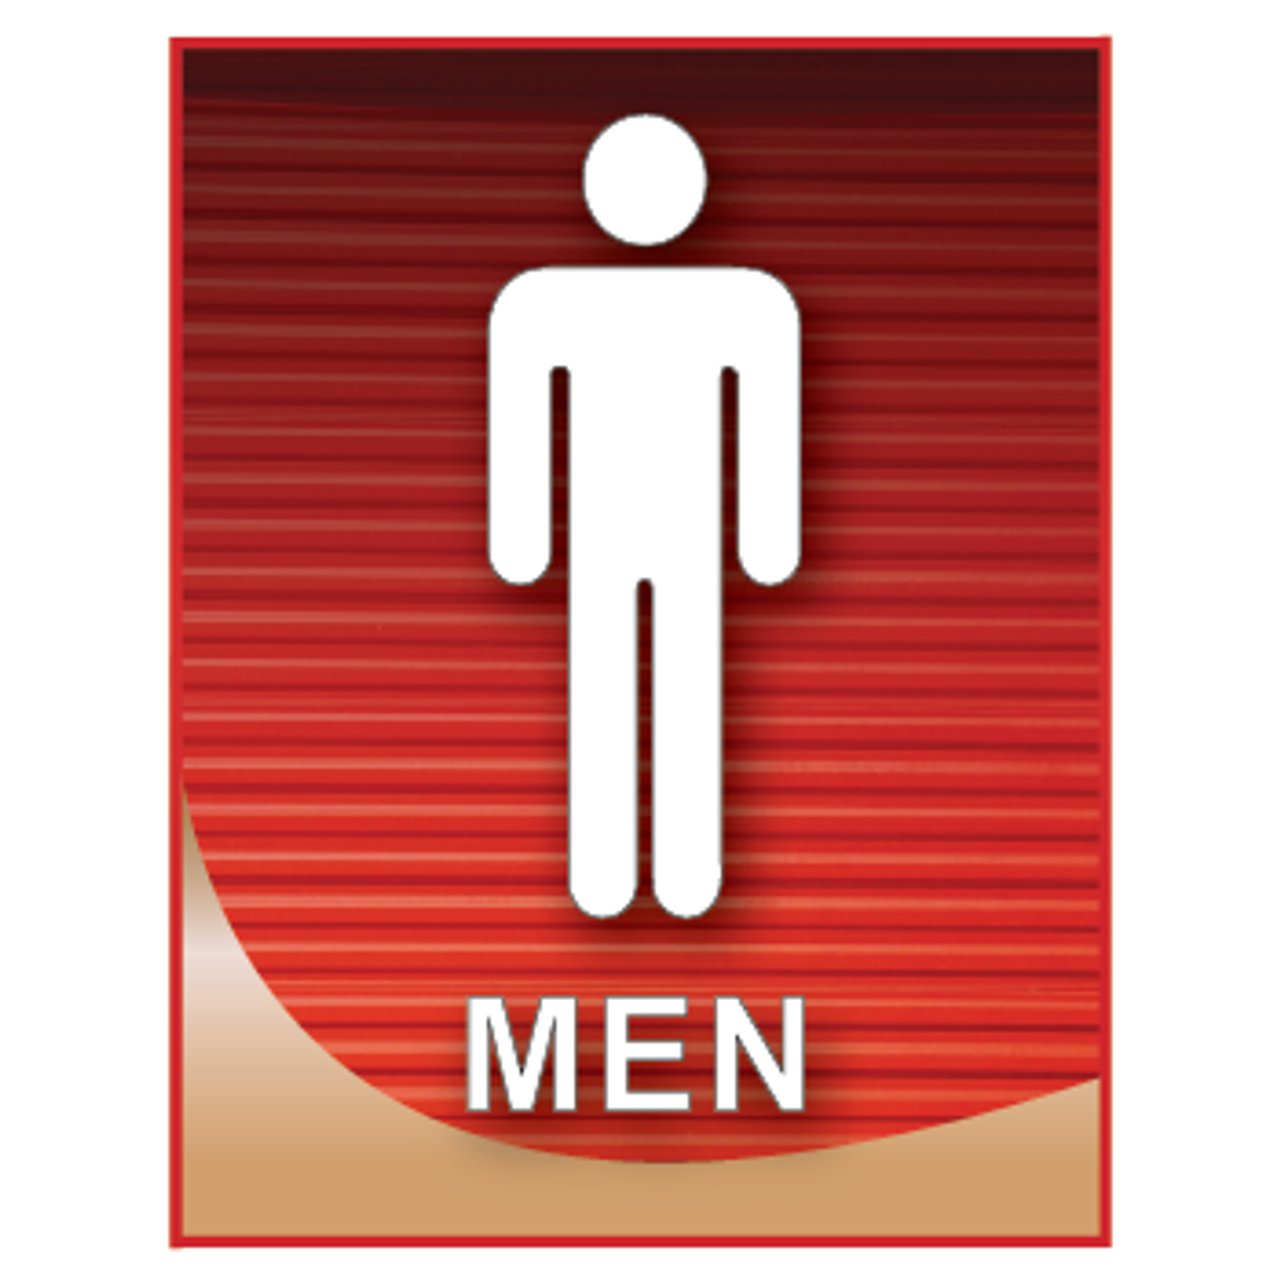 Mens Restroom Sign Printable